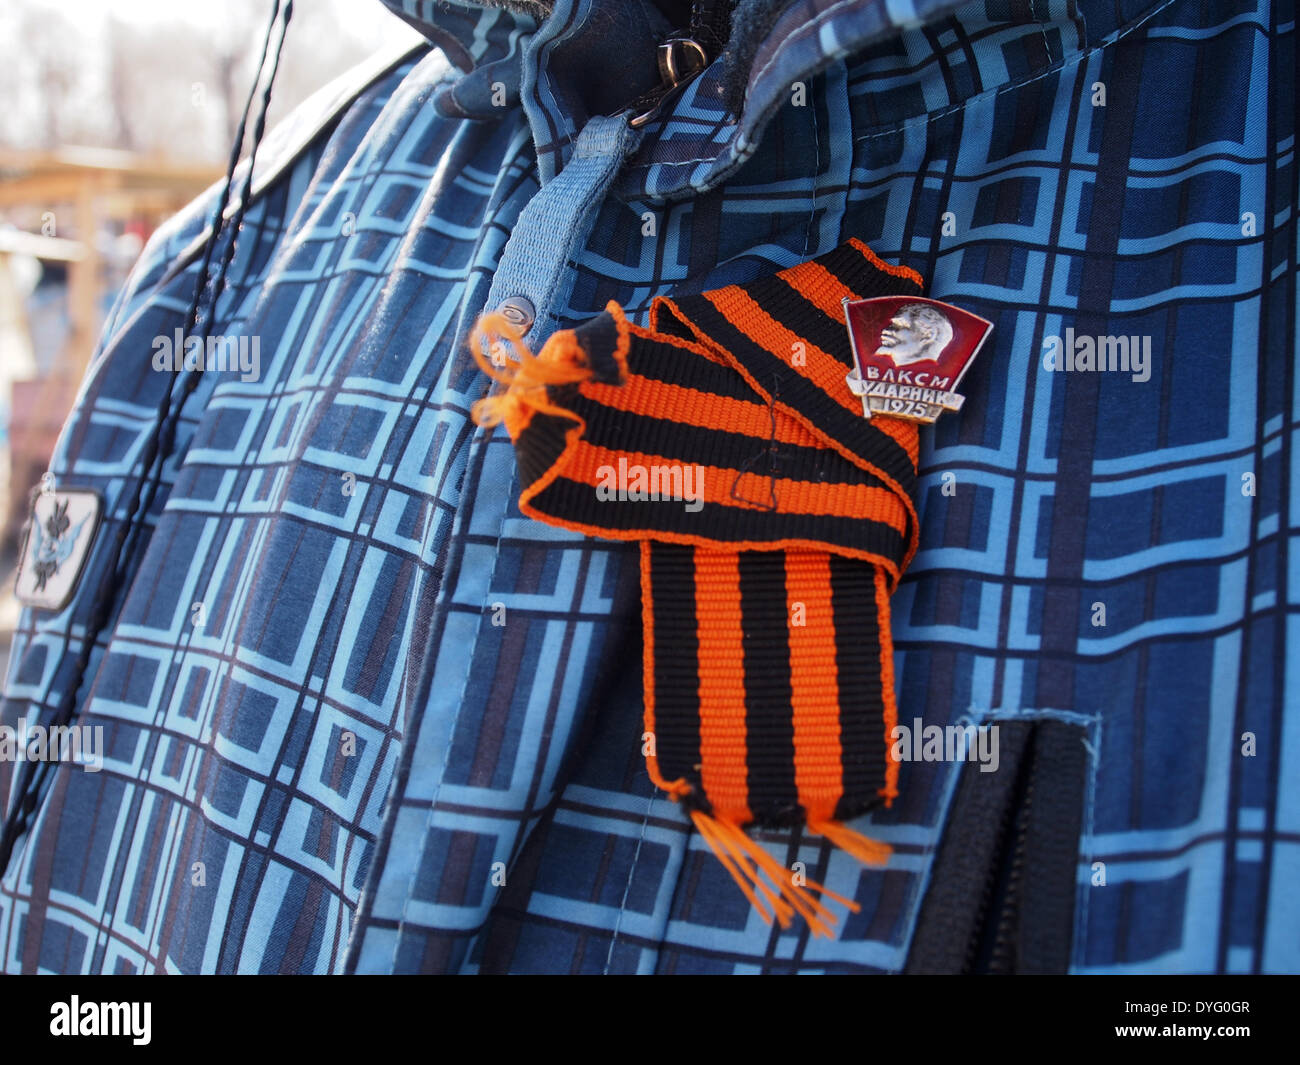 Luhansk, Ukraine. 17 avril, 2014. militant pro-russe, attaché à sa veste à l'aide de ruban de Saint-georges près de l'insigne du Komsomol ukrainien bureau régional du Service de sécurité à Luhansk Crédit : Igor Golovnov/Alamy Live News Banque D'Images